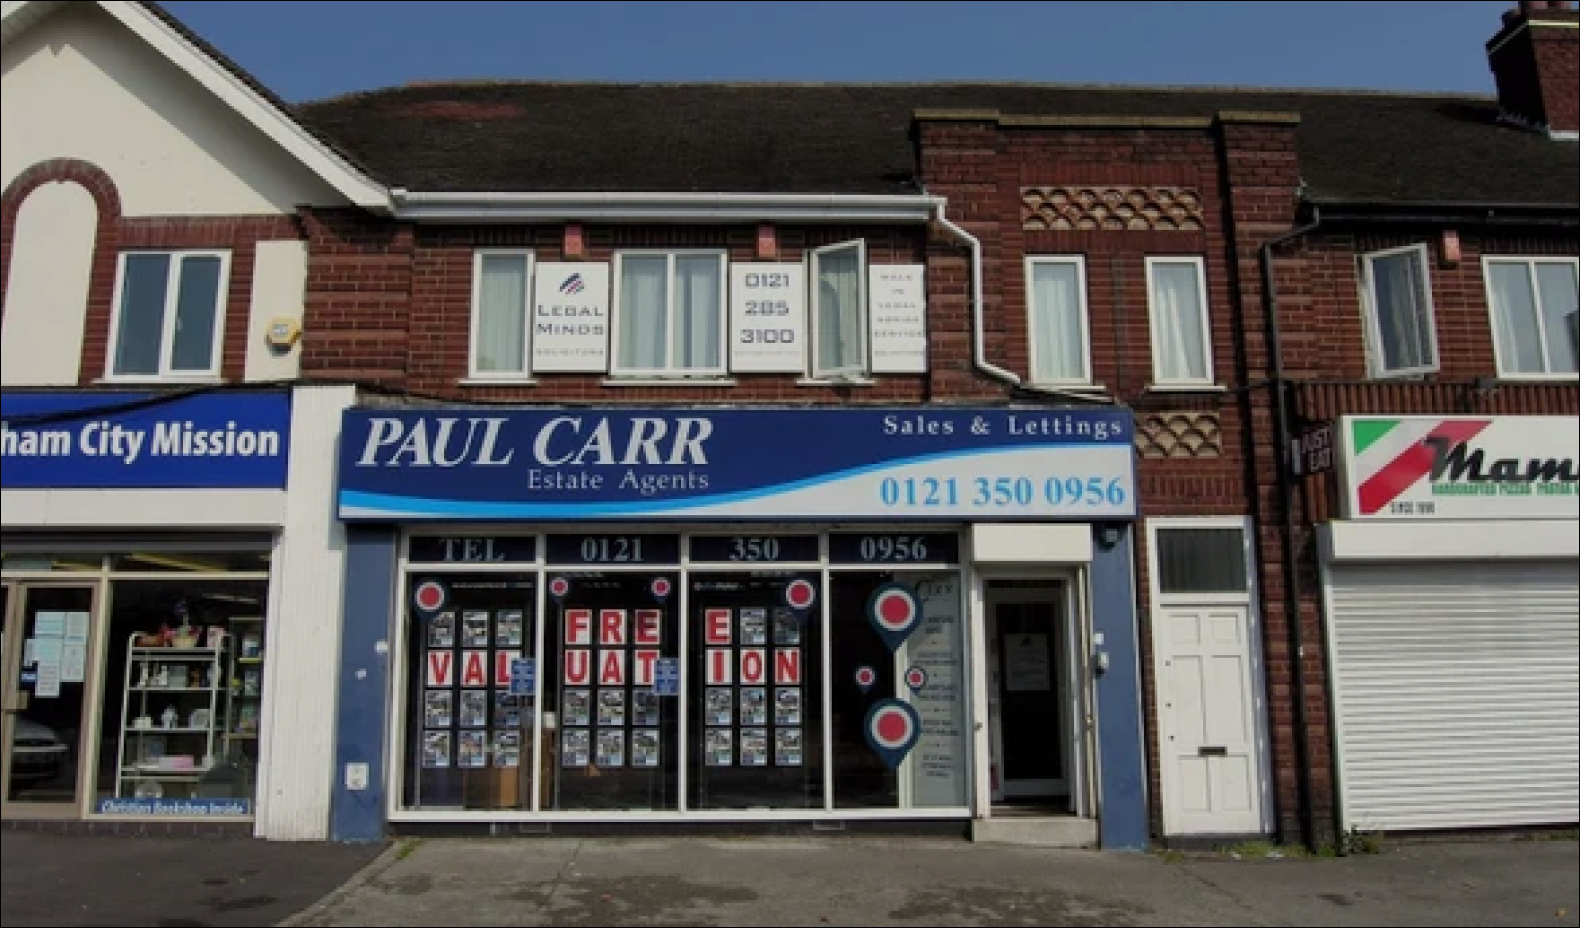 Paul Carr Estate Agents - SME Capital